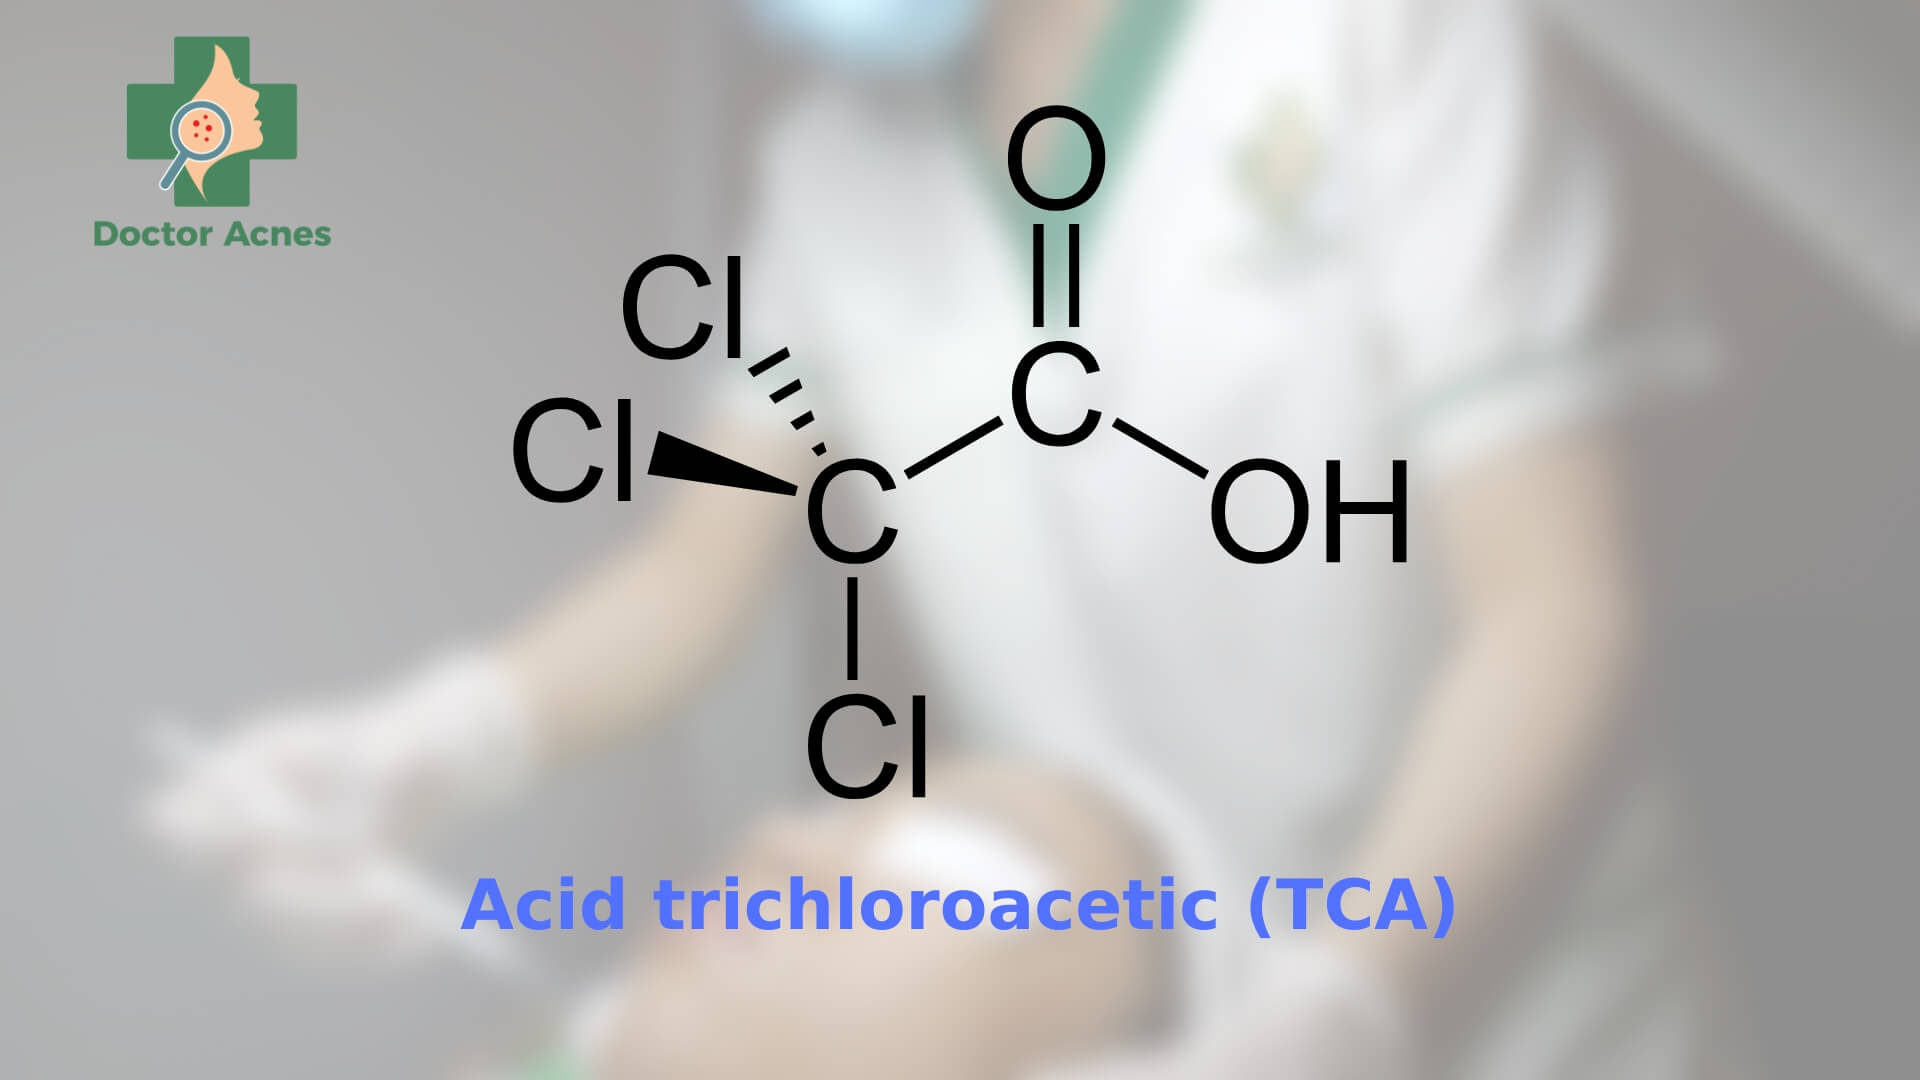 Peel da bằng acid trichloroacetic (TCA) có những lợi ích gì - Doctor Acnes